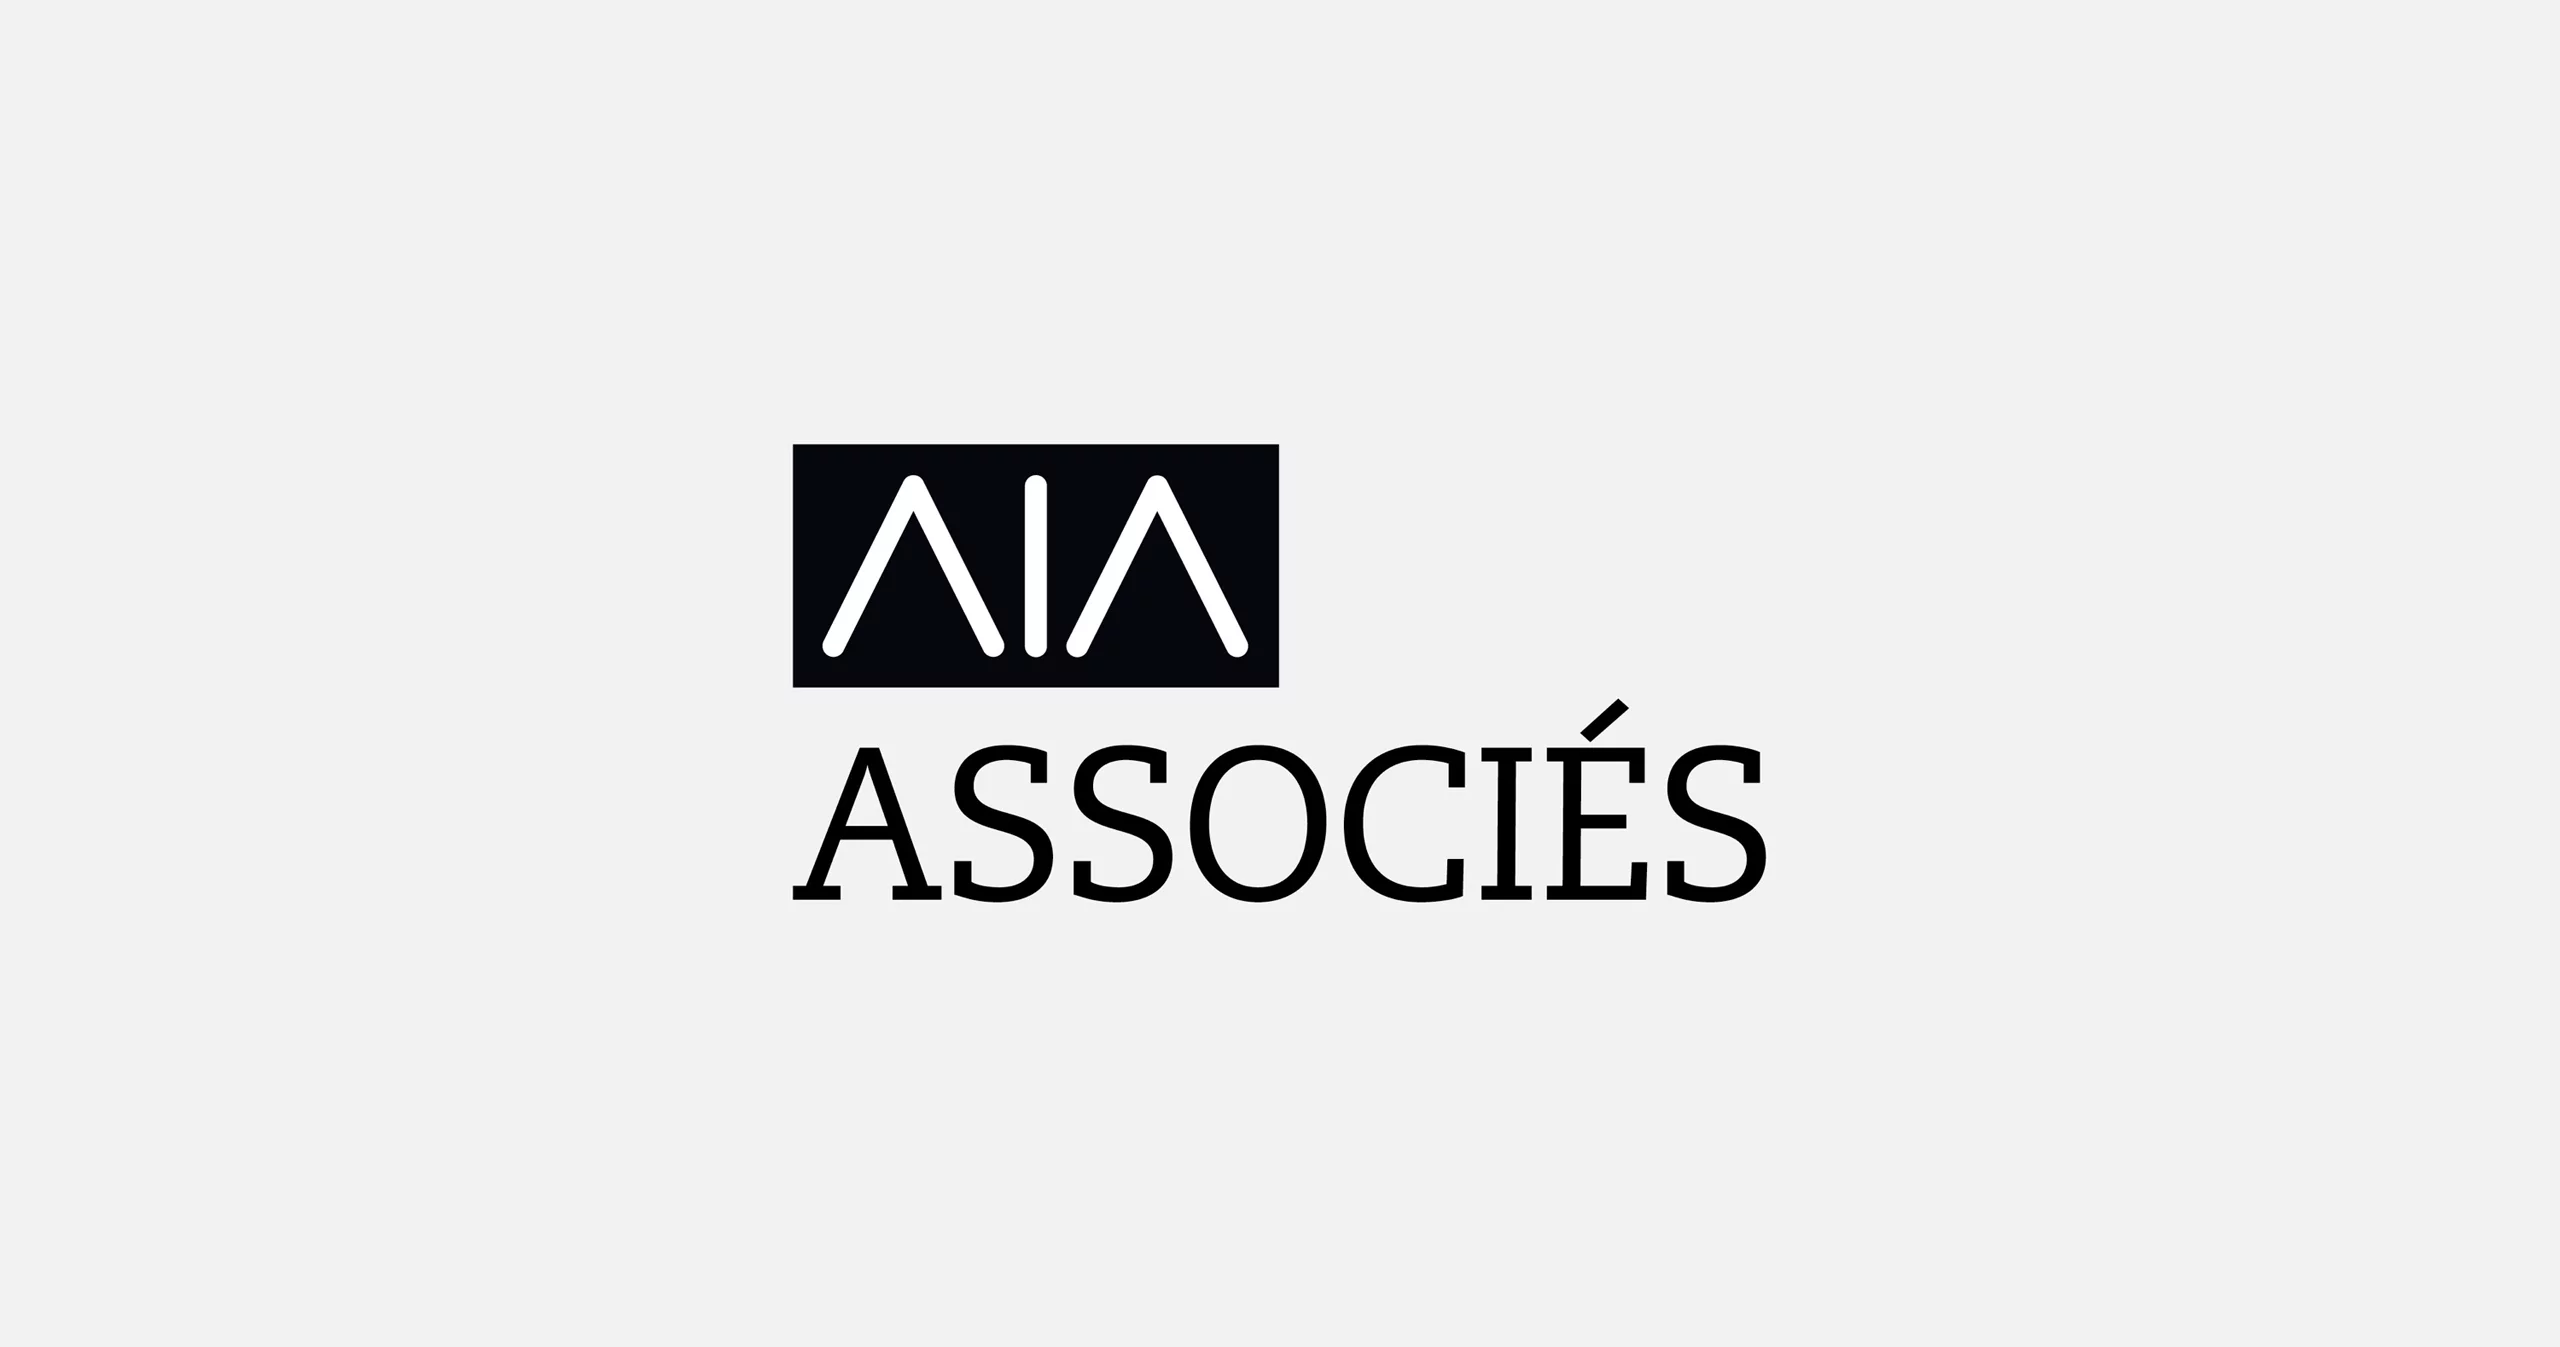 Logotype de AIA Associés. Les lettres AIA sont en défonce dans un cadre noir.